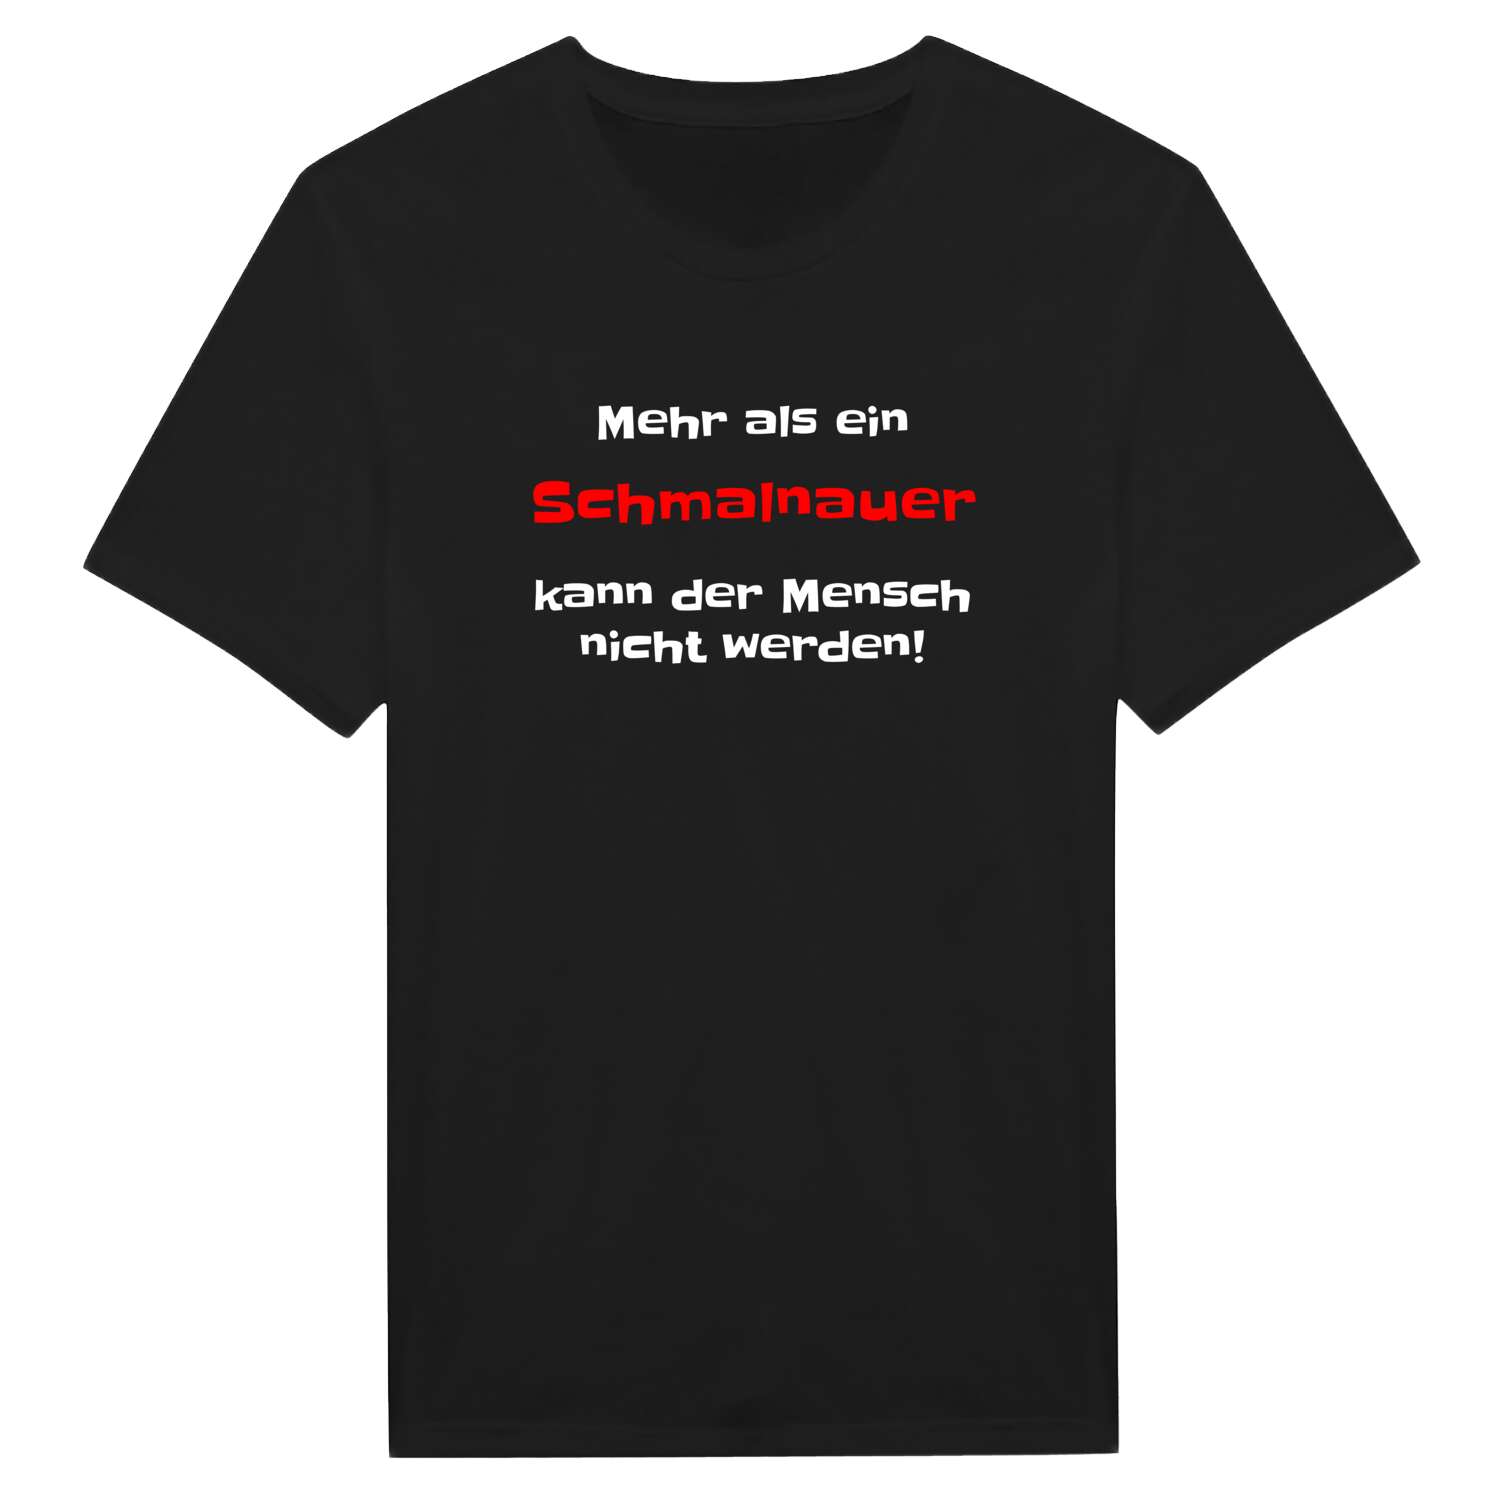 Schmalnau T-Shirt »Mehr als ein«